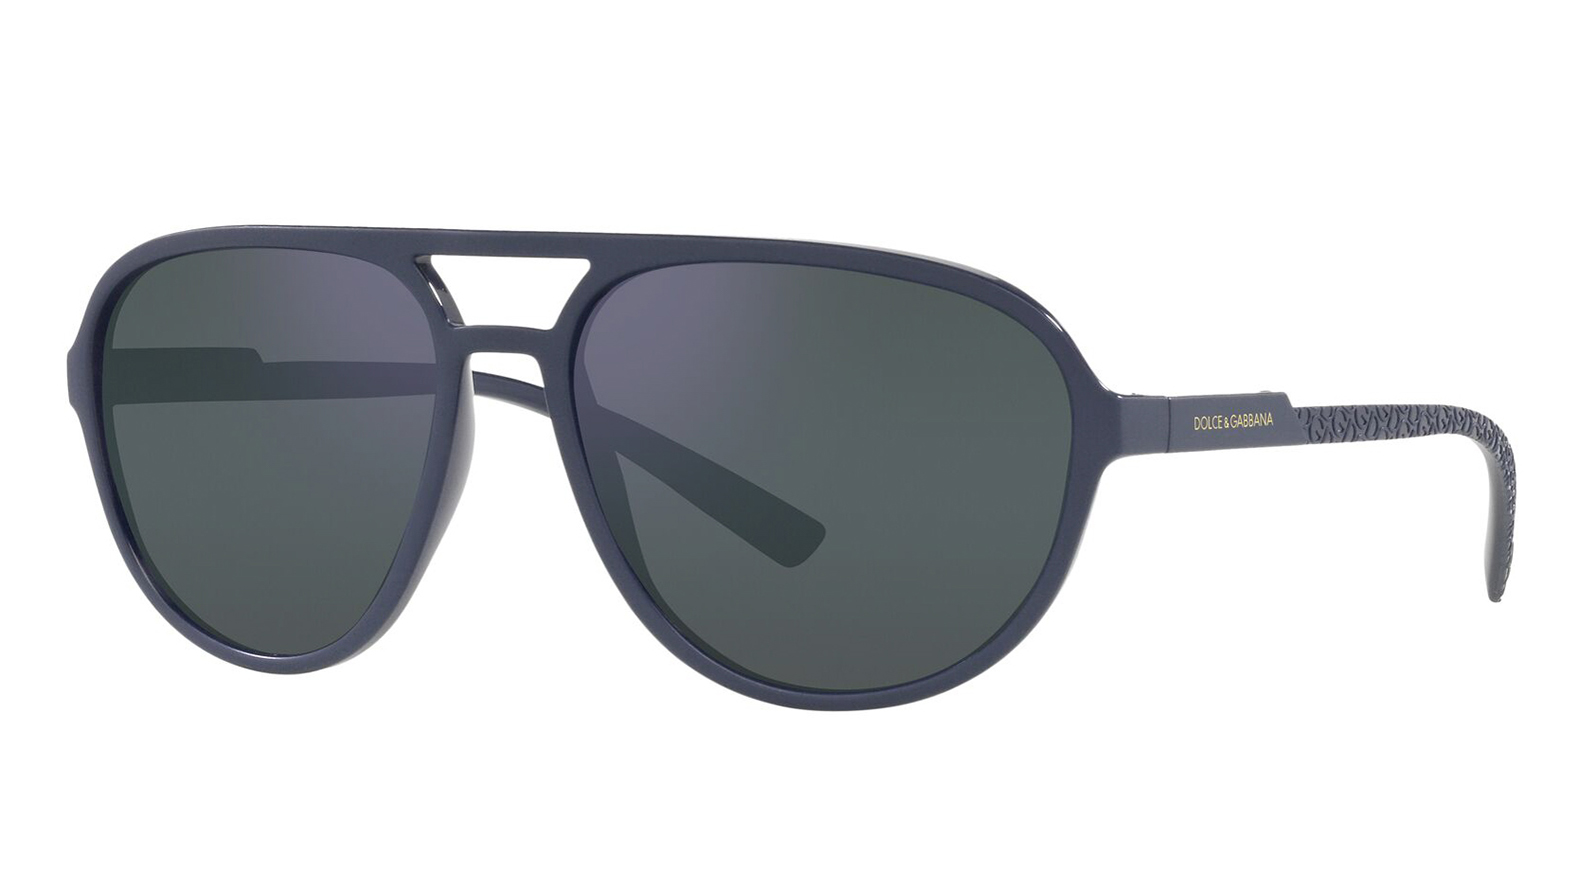 Dolce&Gabbana 6150 329625 uv400 поляризованные солнцезащитные очки верховая езда велосипед спортивные солнцезащитные очки водитель очки